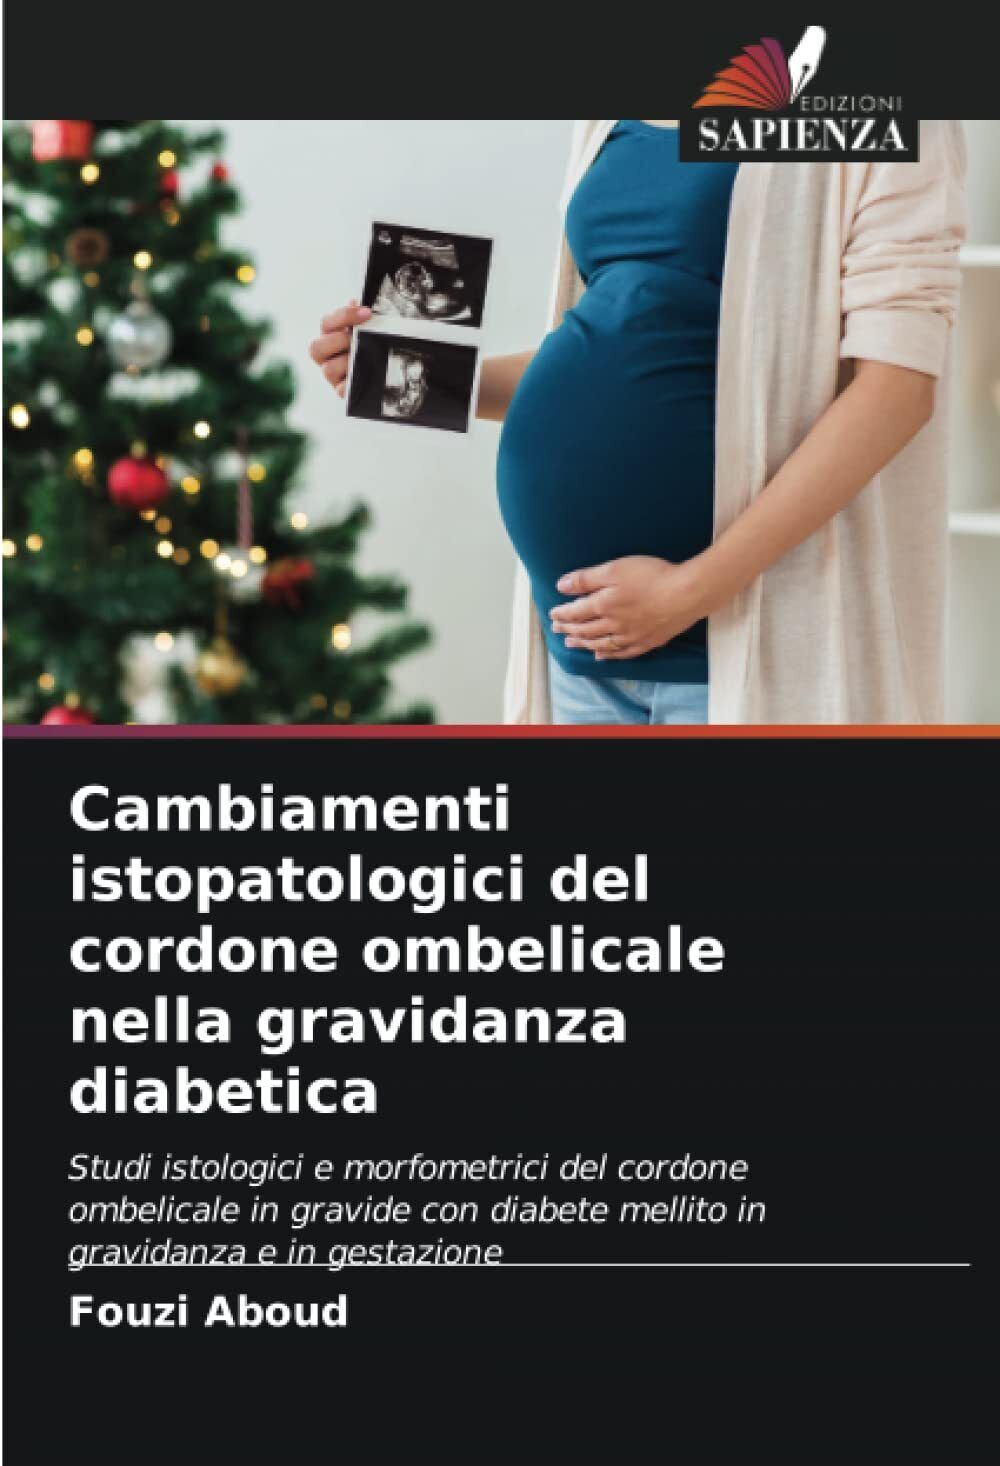 Cambiamenti istopatologici del cordone ombelicale nella gravidanza diabetica